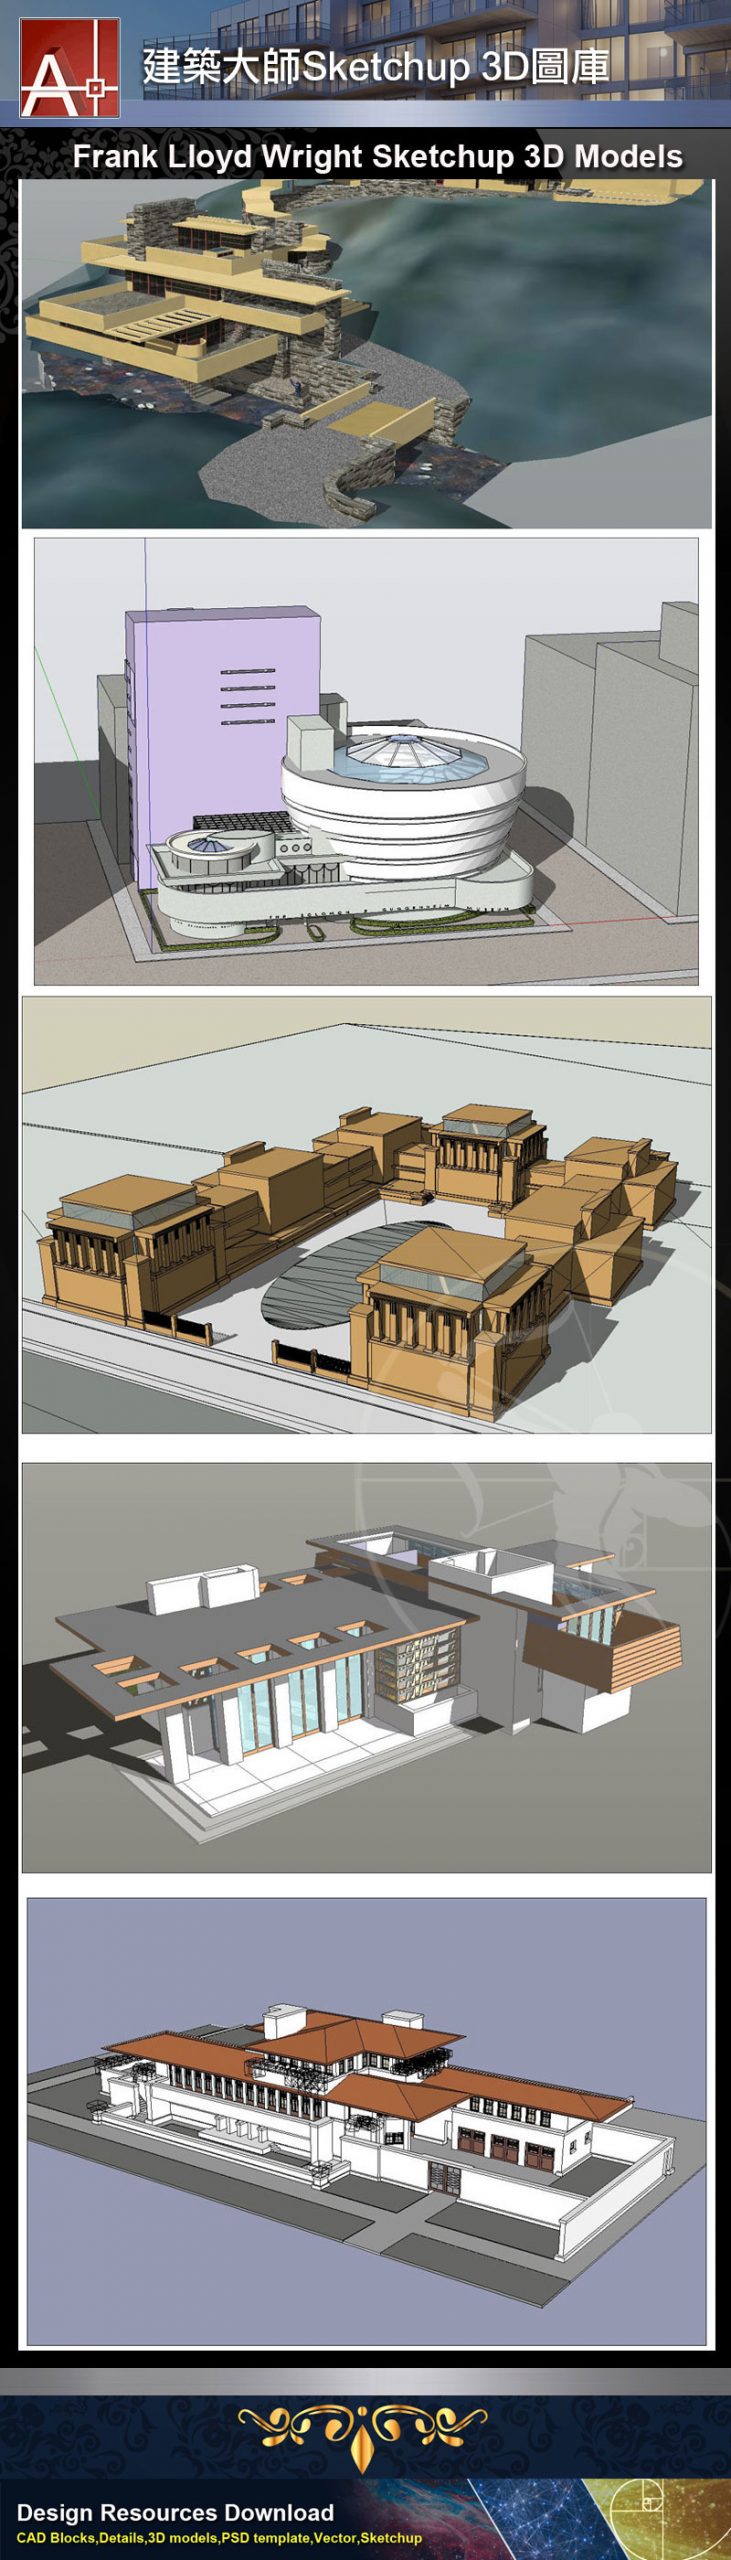 【建築大師Sketchup Models-法蘭克·洛伊·萊特Frank Lloyd Wright 精選16項建築3D模型】